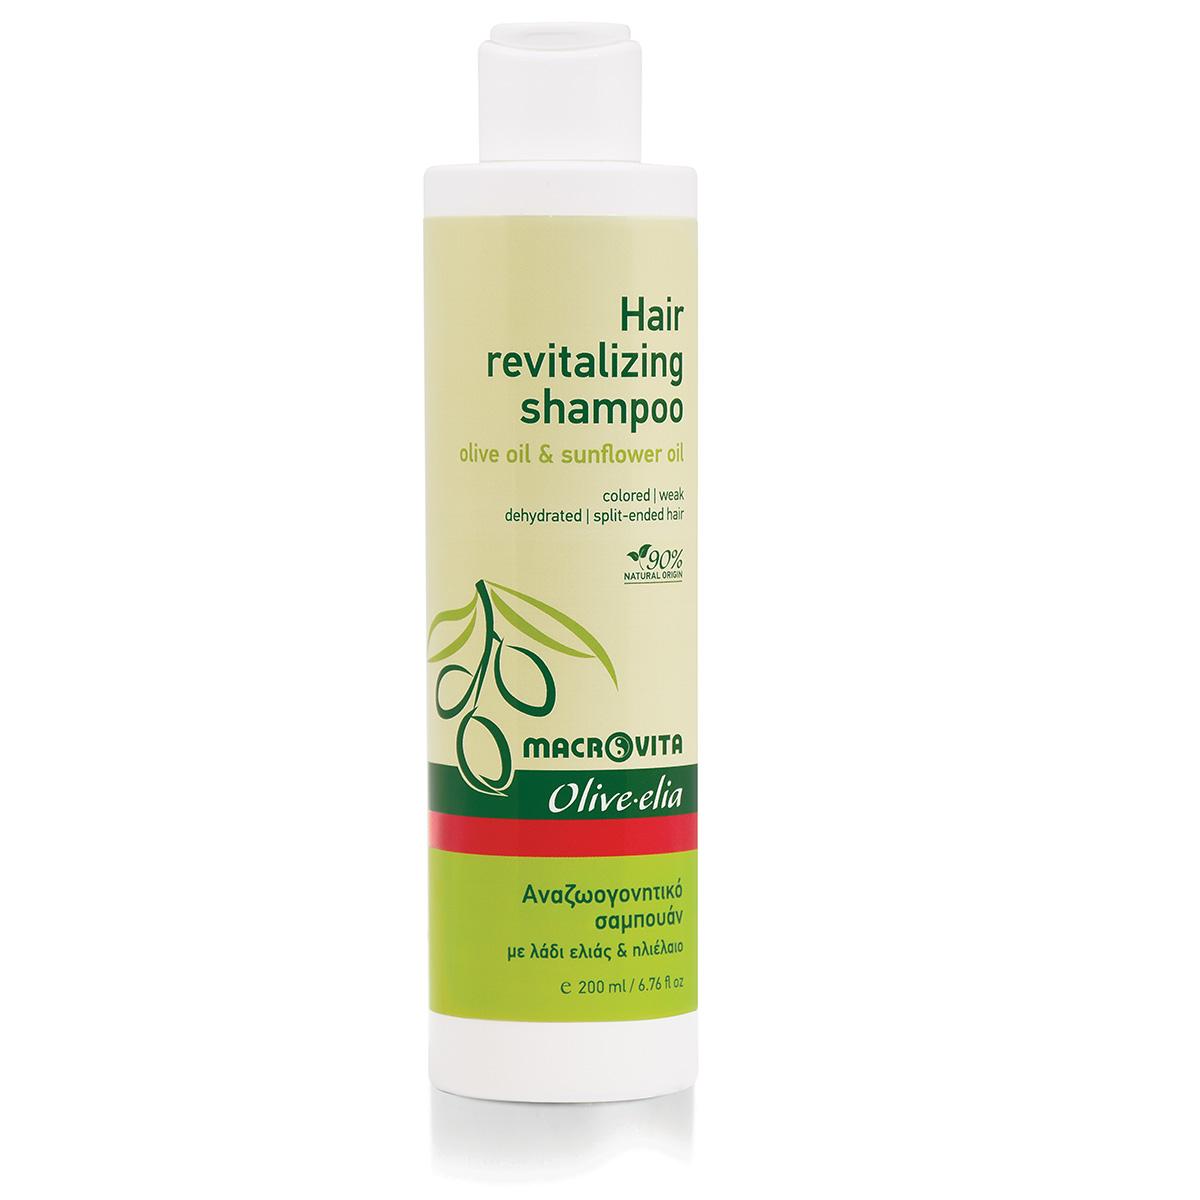 MACROVITA Šampon za revitalizaciju kose 200 ml